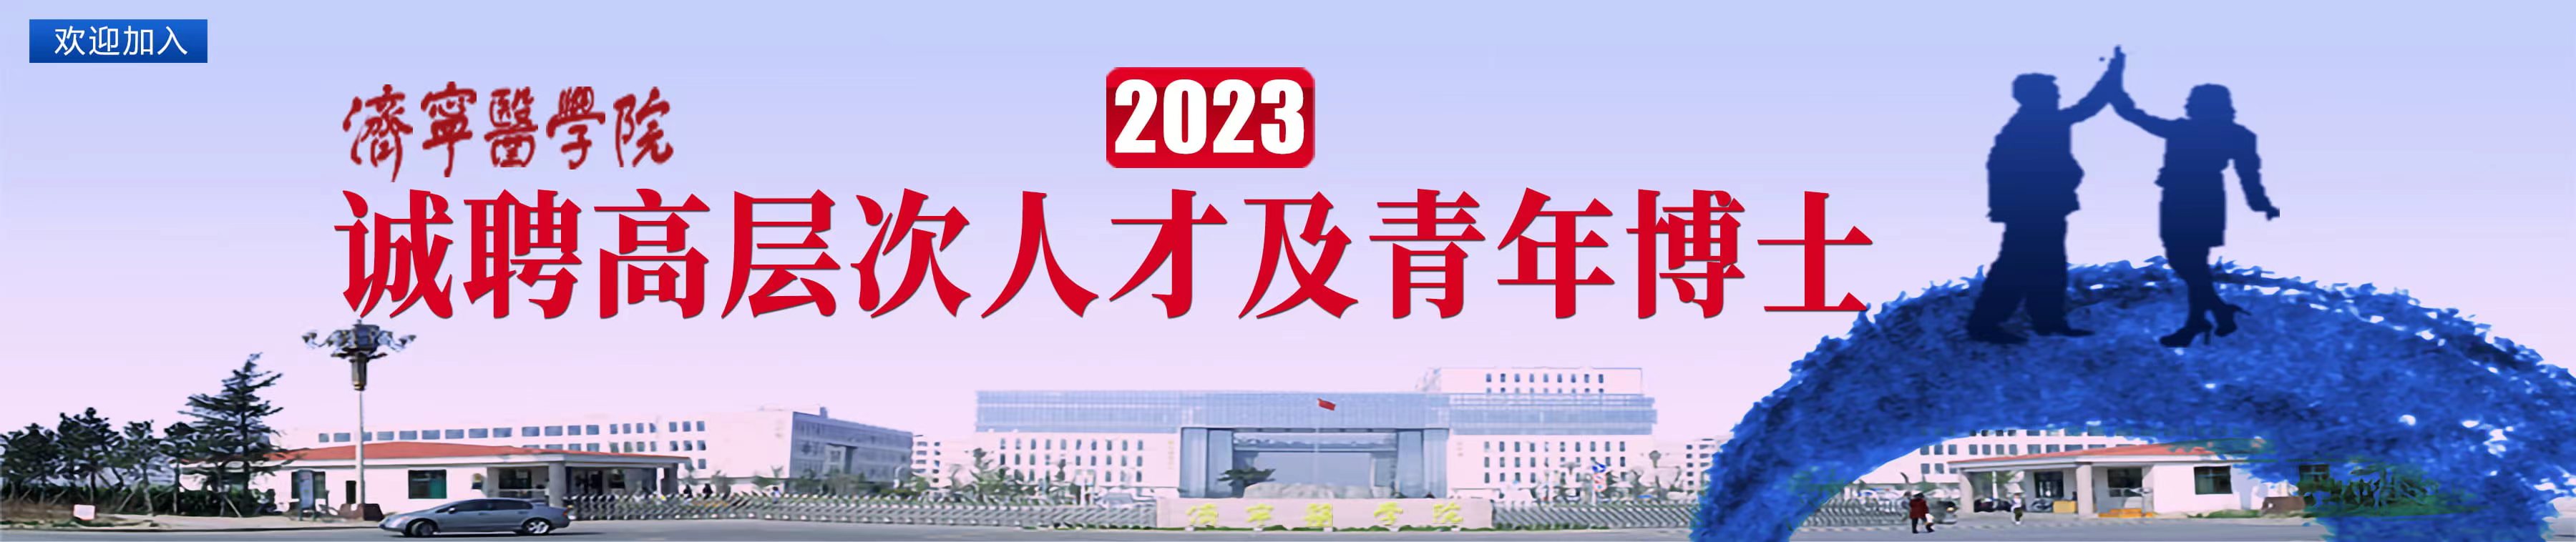 济宁医学院2023年招聘高层次...